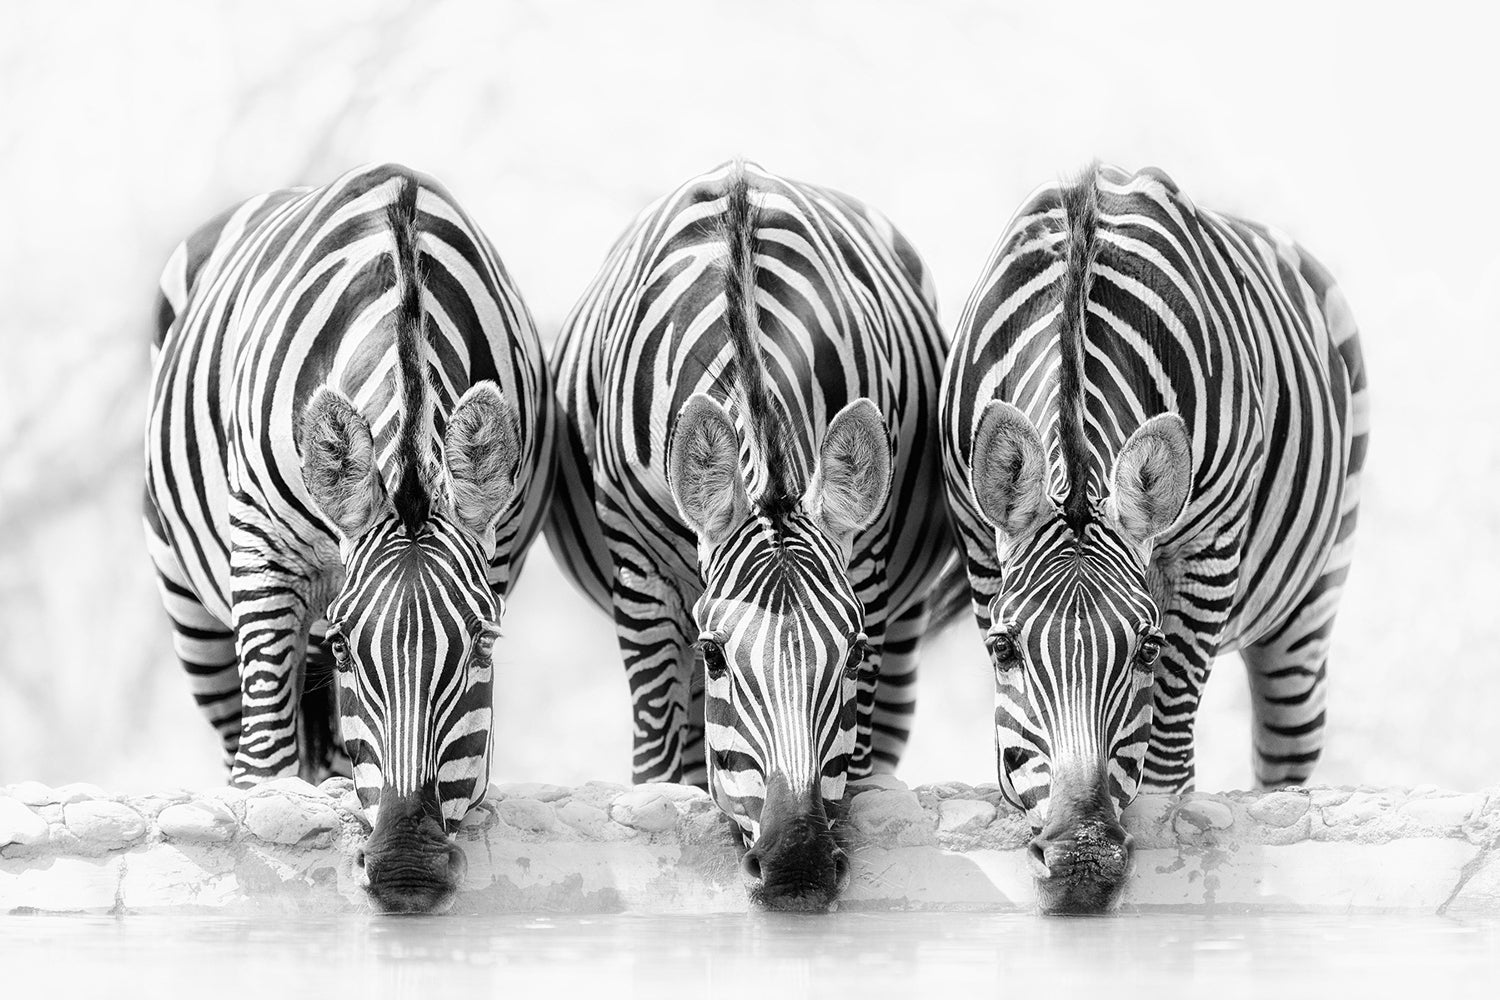 Fotomurale Zebras